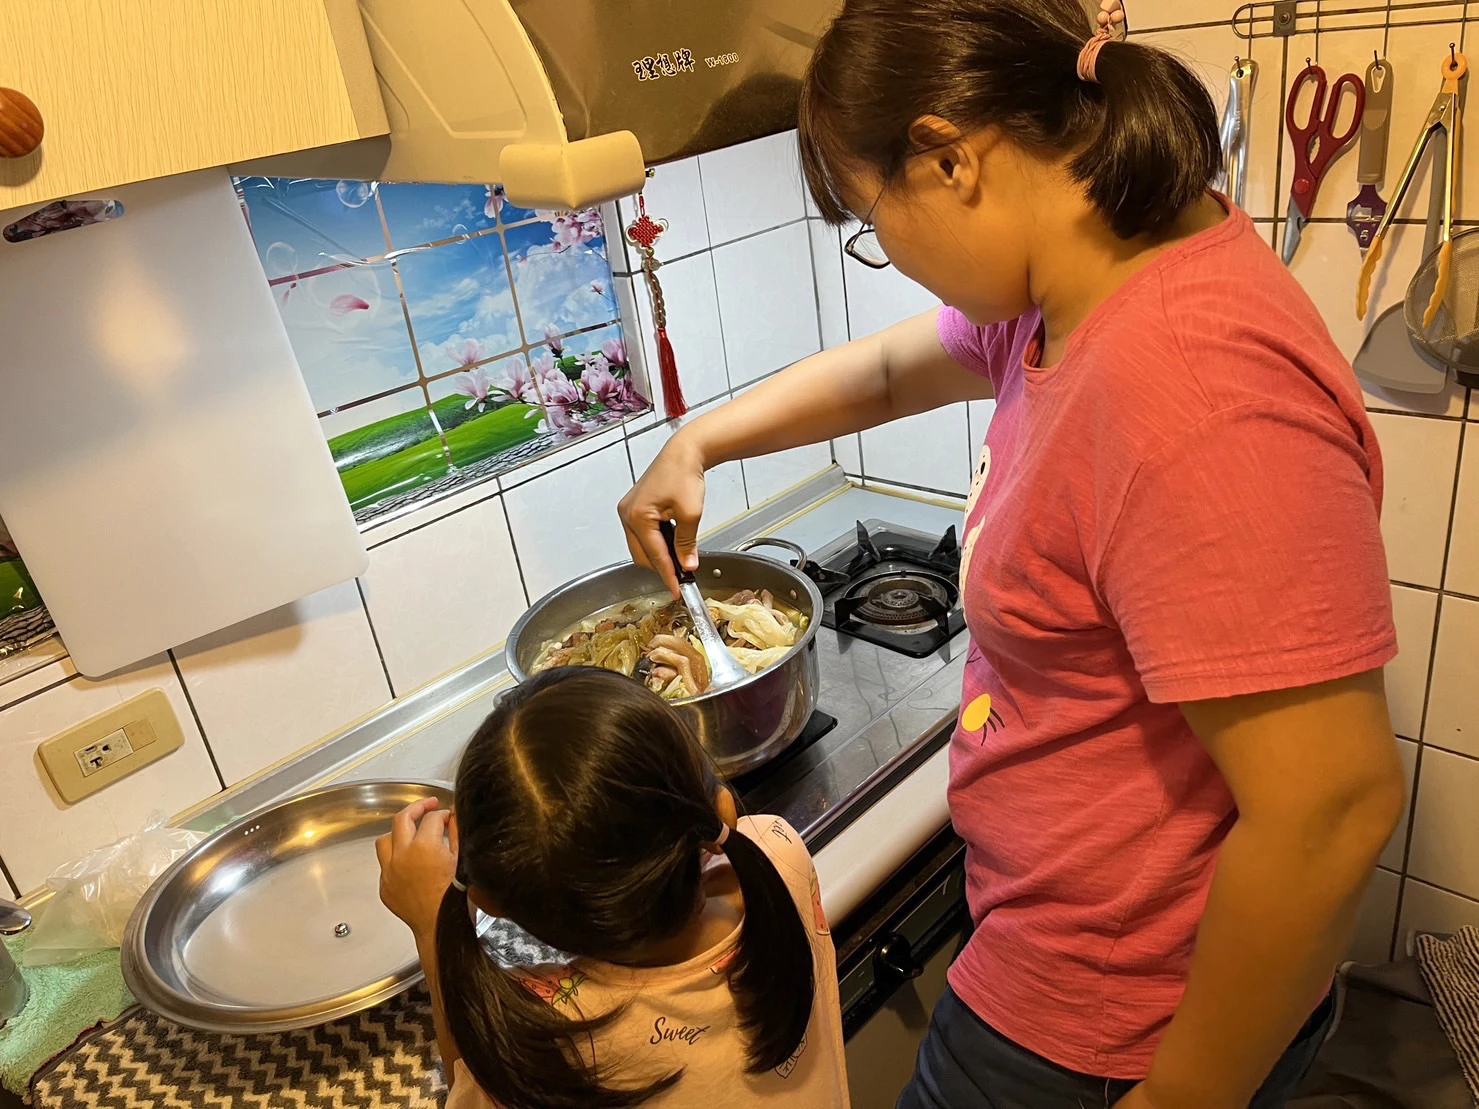 台灣世界展望會的營養扶助金與親職教育，讓潔潔媽媽對食物有更多認識，雖然環境困苦，但還是要讓孩子吃得均衡營養。